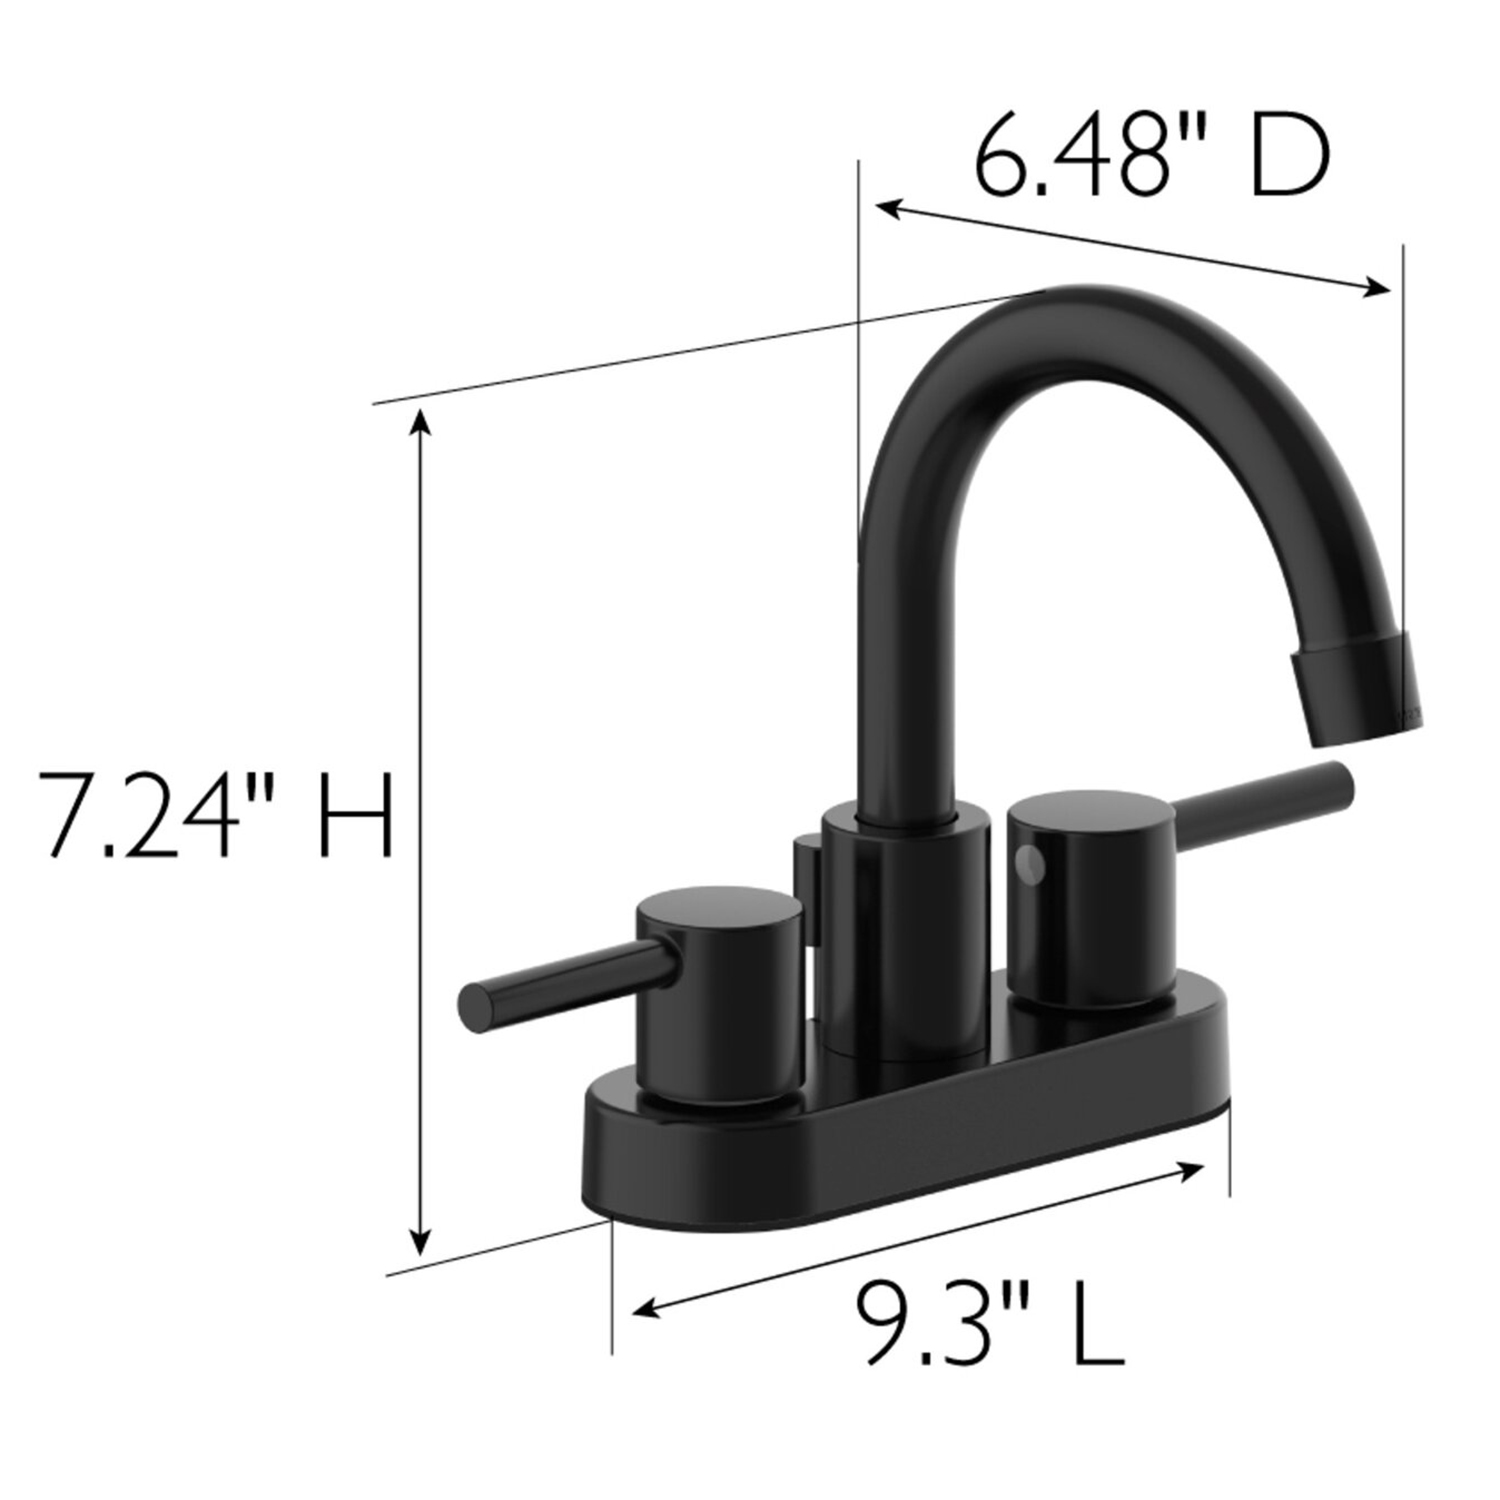 Grifo para lavabo de baño generalizado de 8 pulgadas con doble manija y superficie cromada Aquacubic